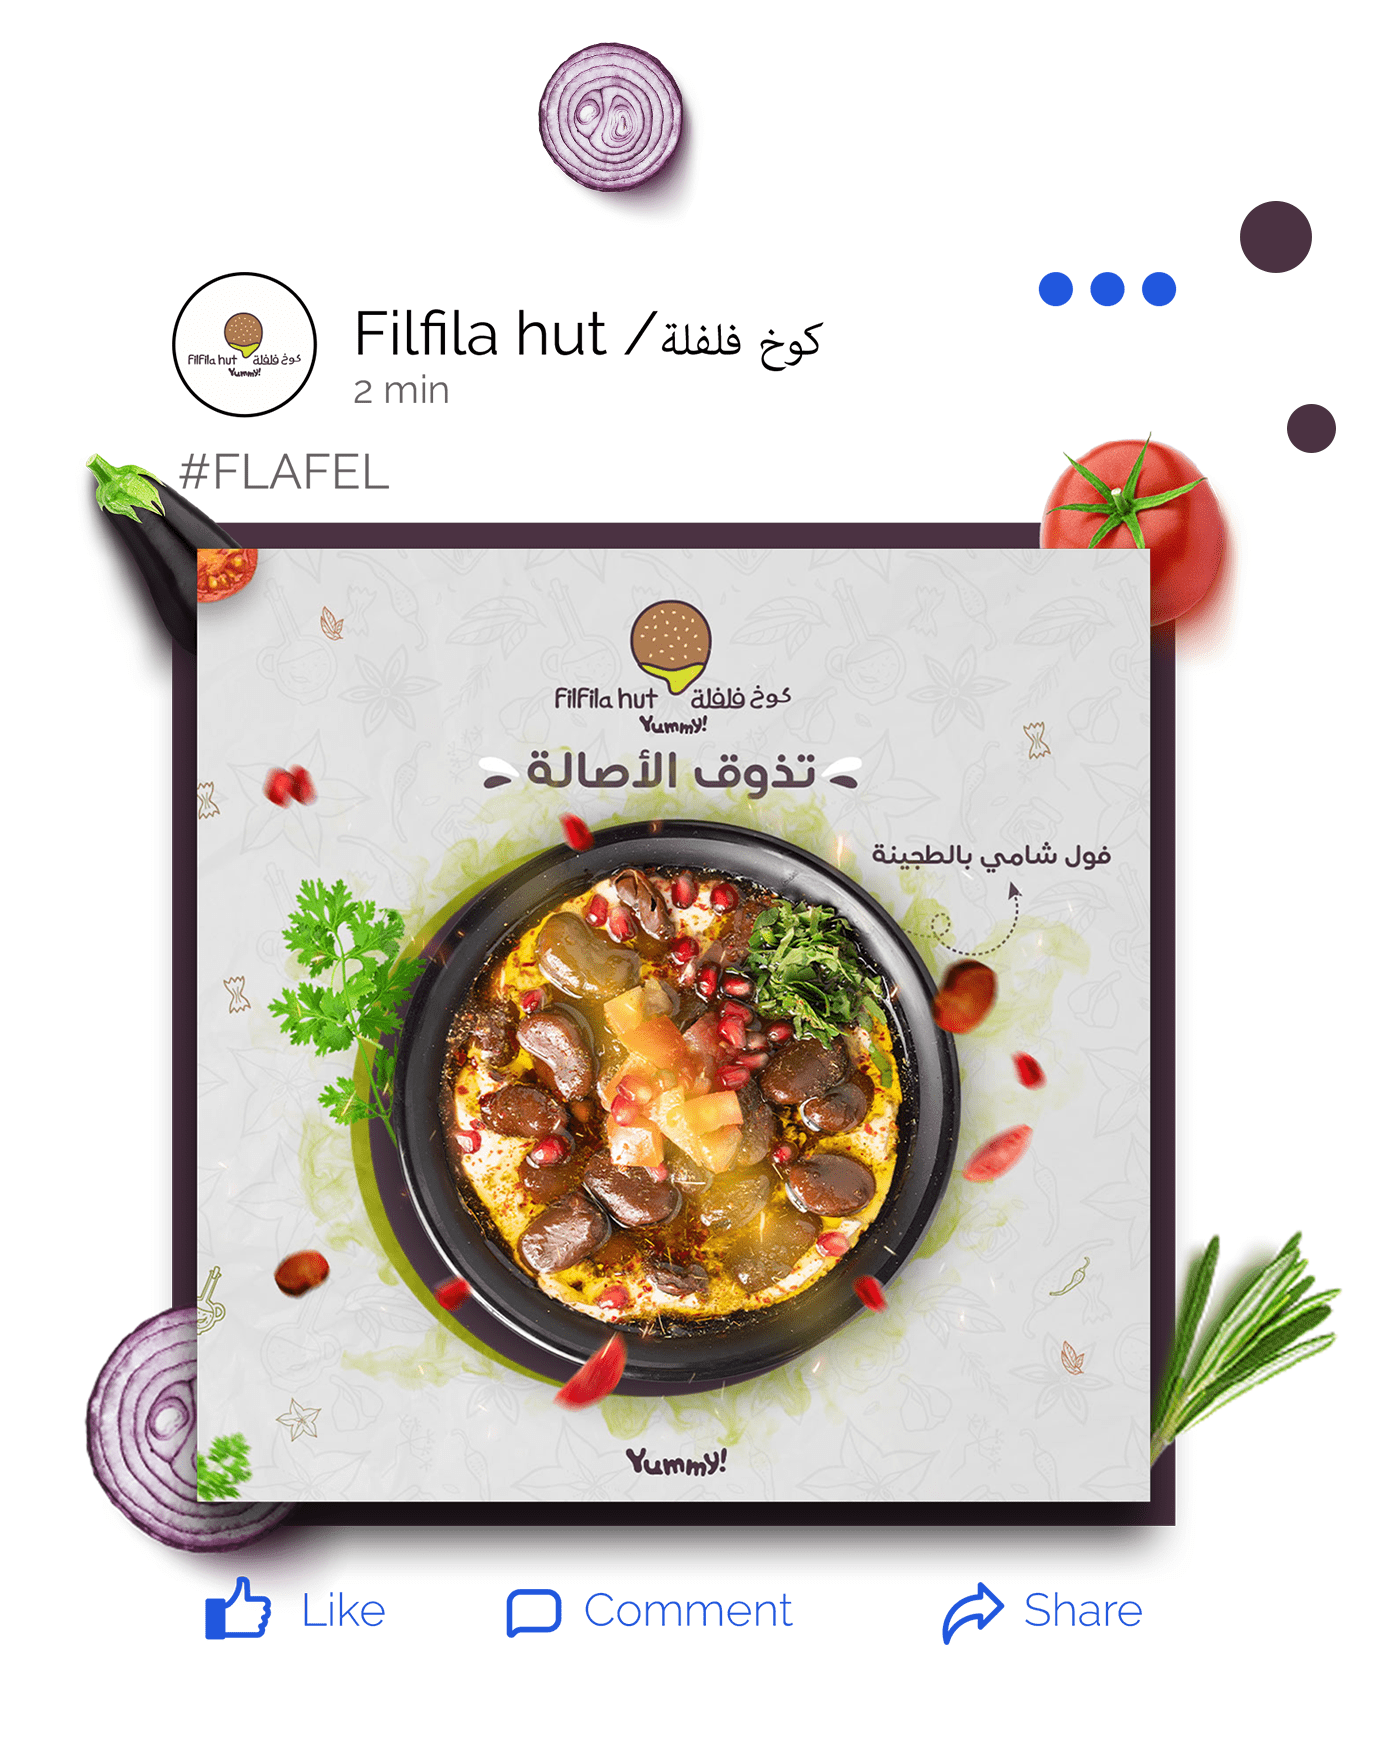 ads Advertising  campaign falafel Food  instagram marketing   media restaurant social media